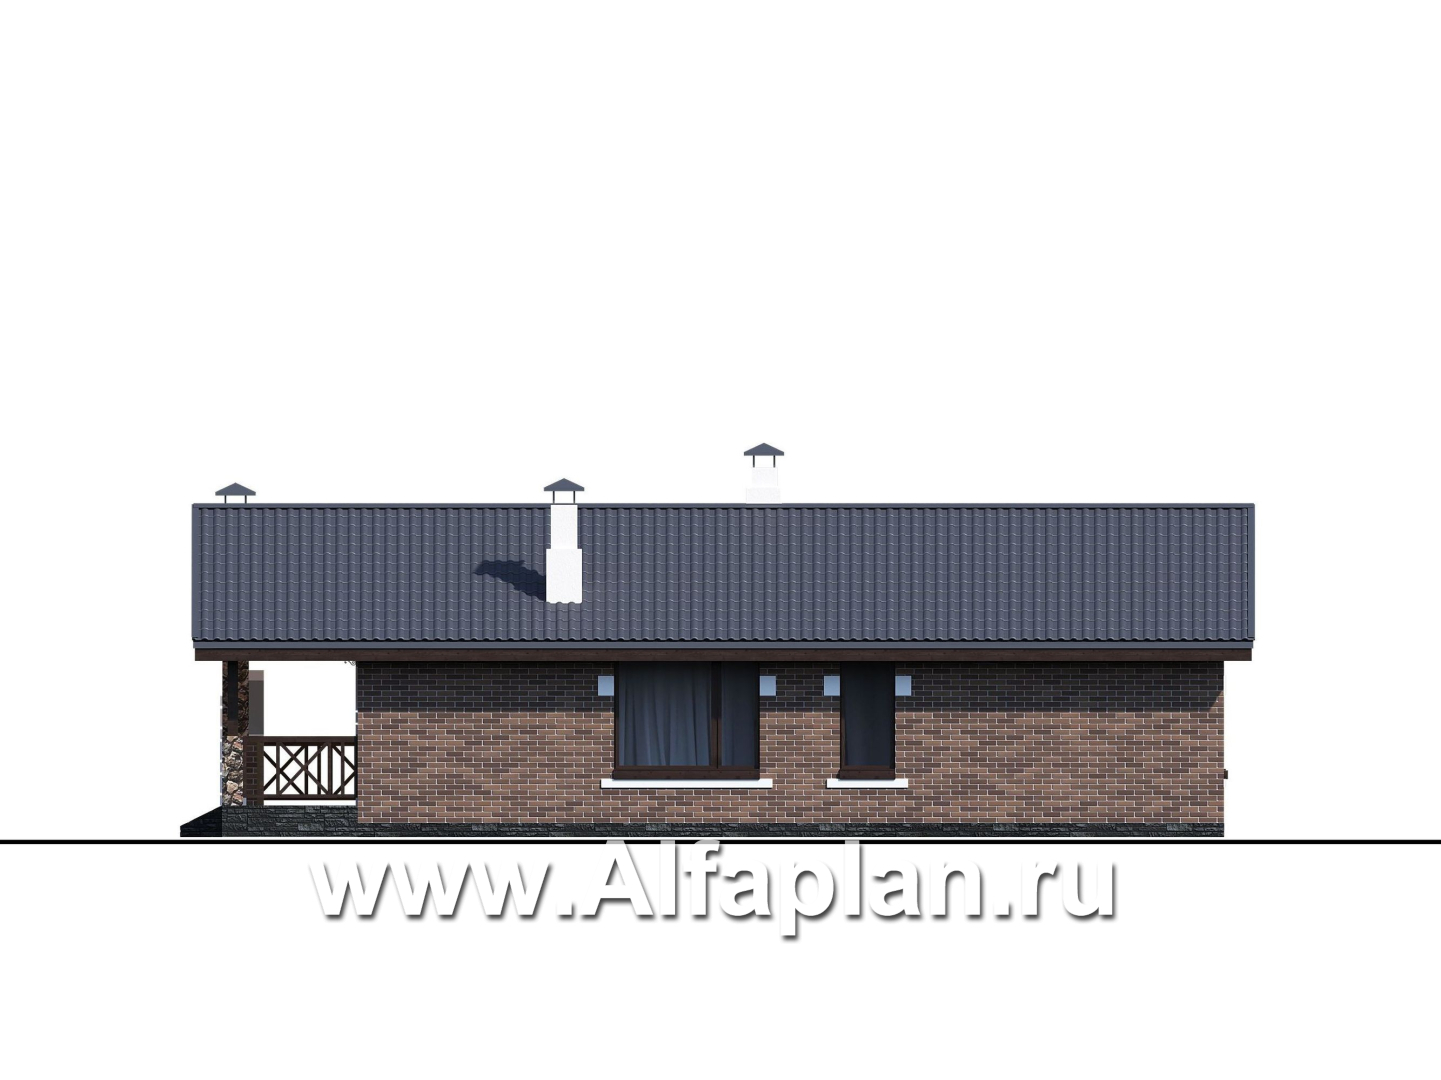 Проекты домов Альфаплан - «Родия» - одноэтажный коттедж с двускатной кровлей - изображение фасада №4